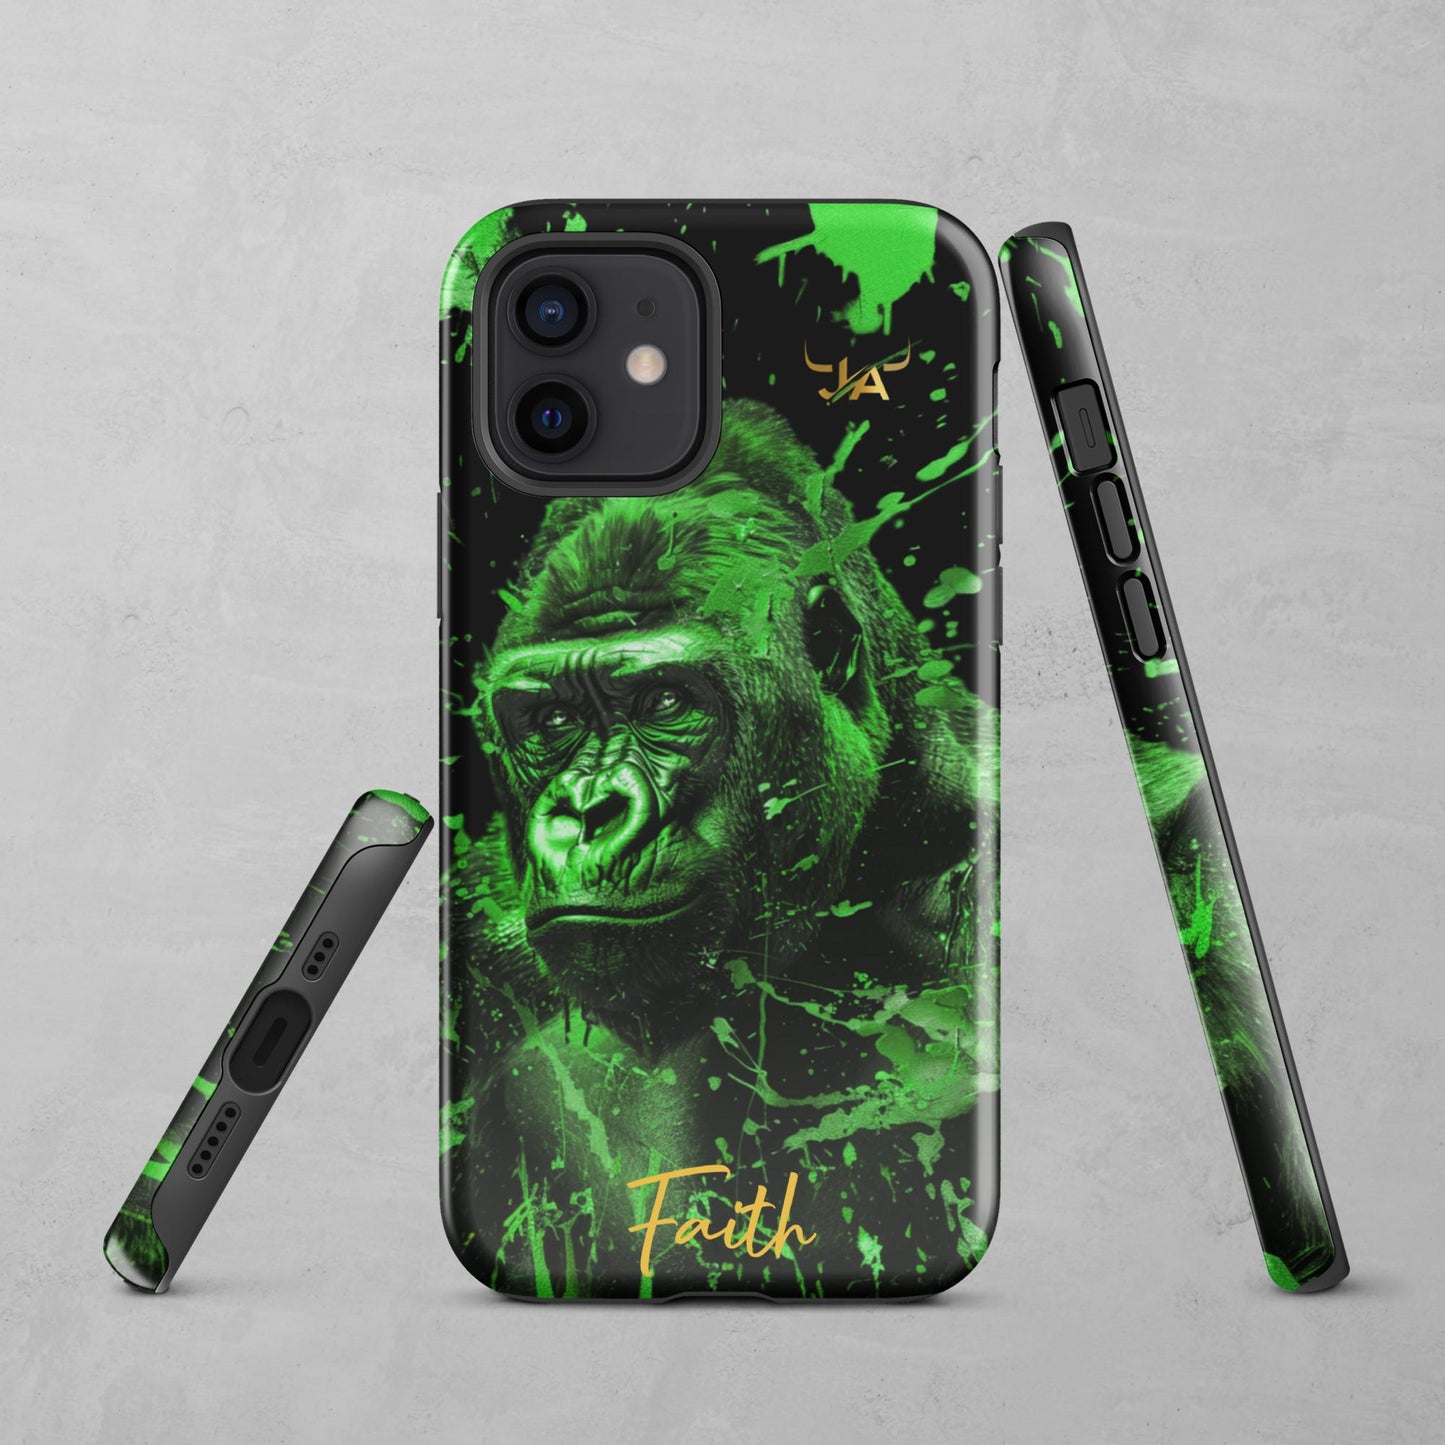 J.A Faith Green GorillaTough Case for iPhone®